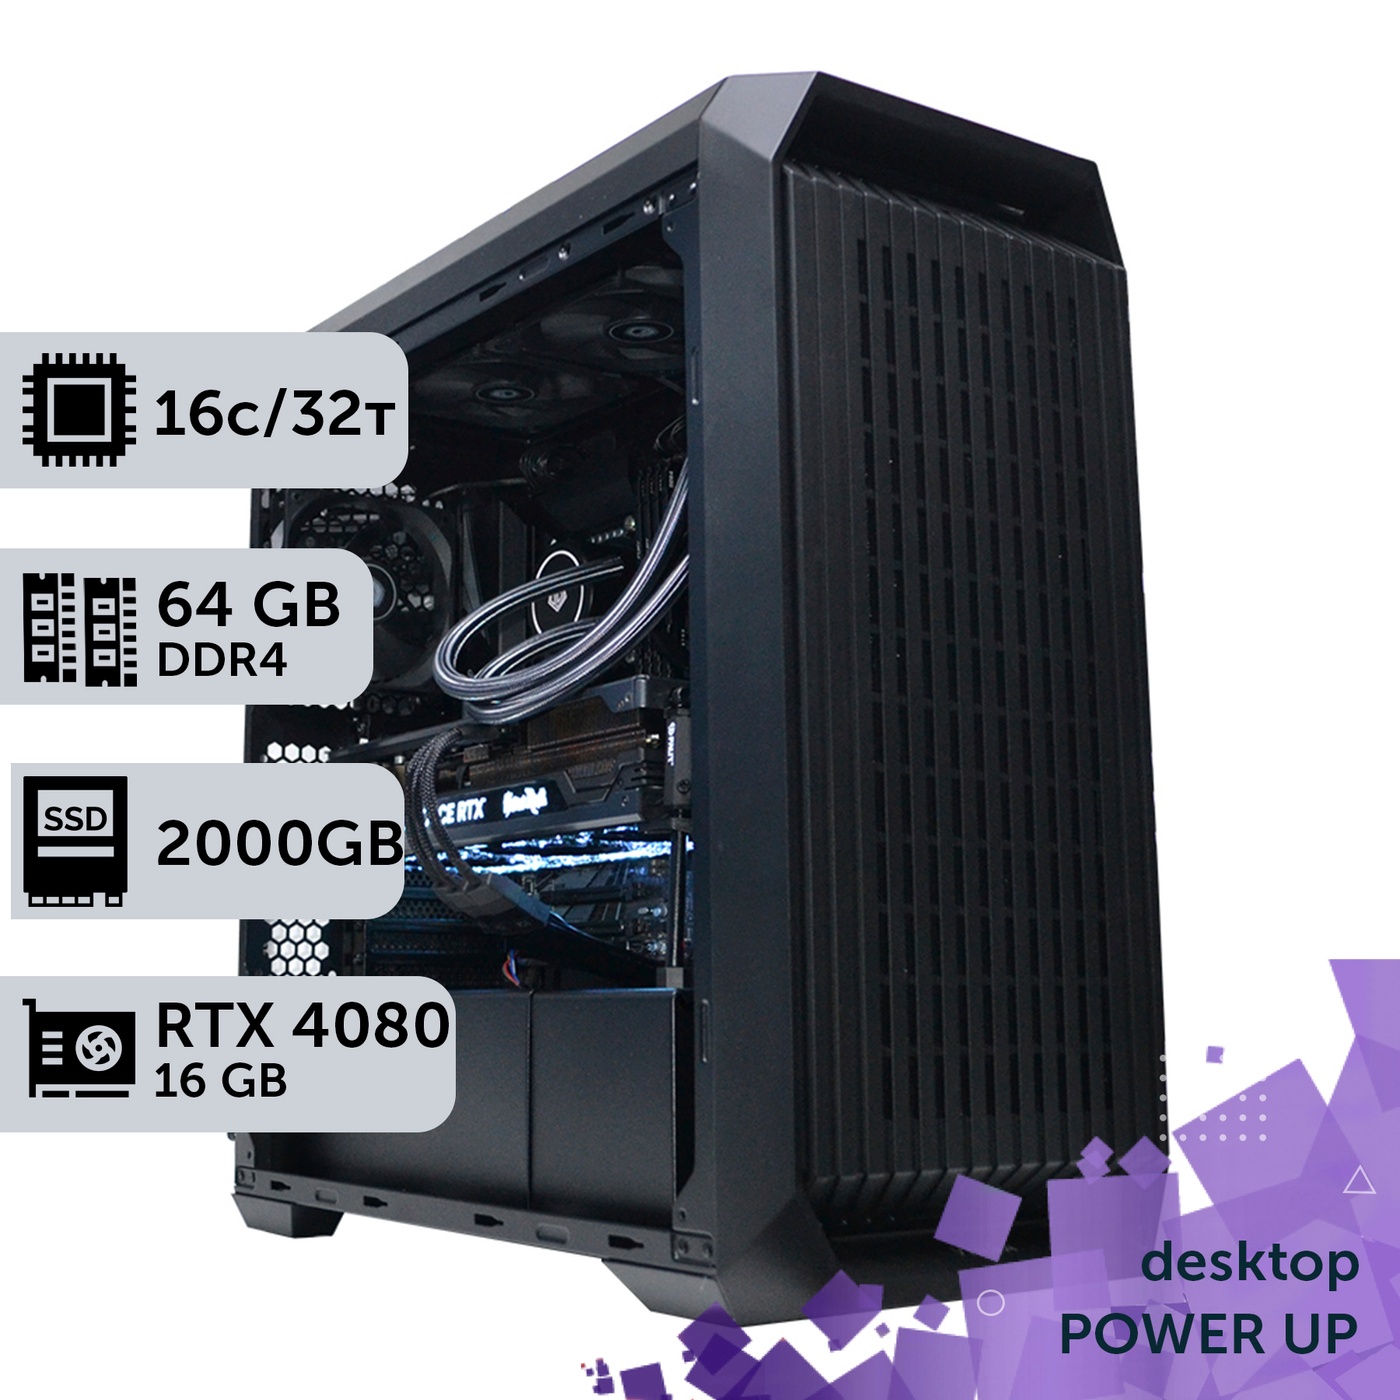 Рабочая станция PowerUp Desktop #205 Ryzen 9 5950x/64 GB/HDD 2 TB/SSD 1TB/GeForce RTX 4080 16GB